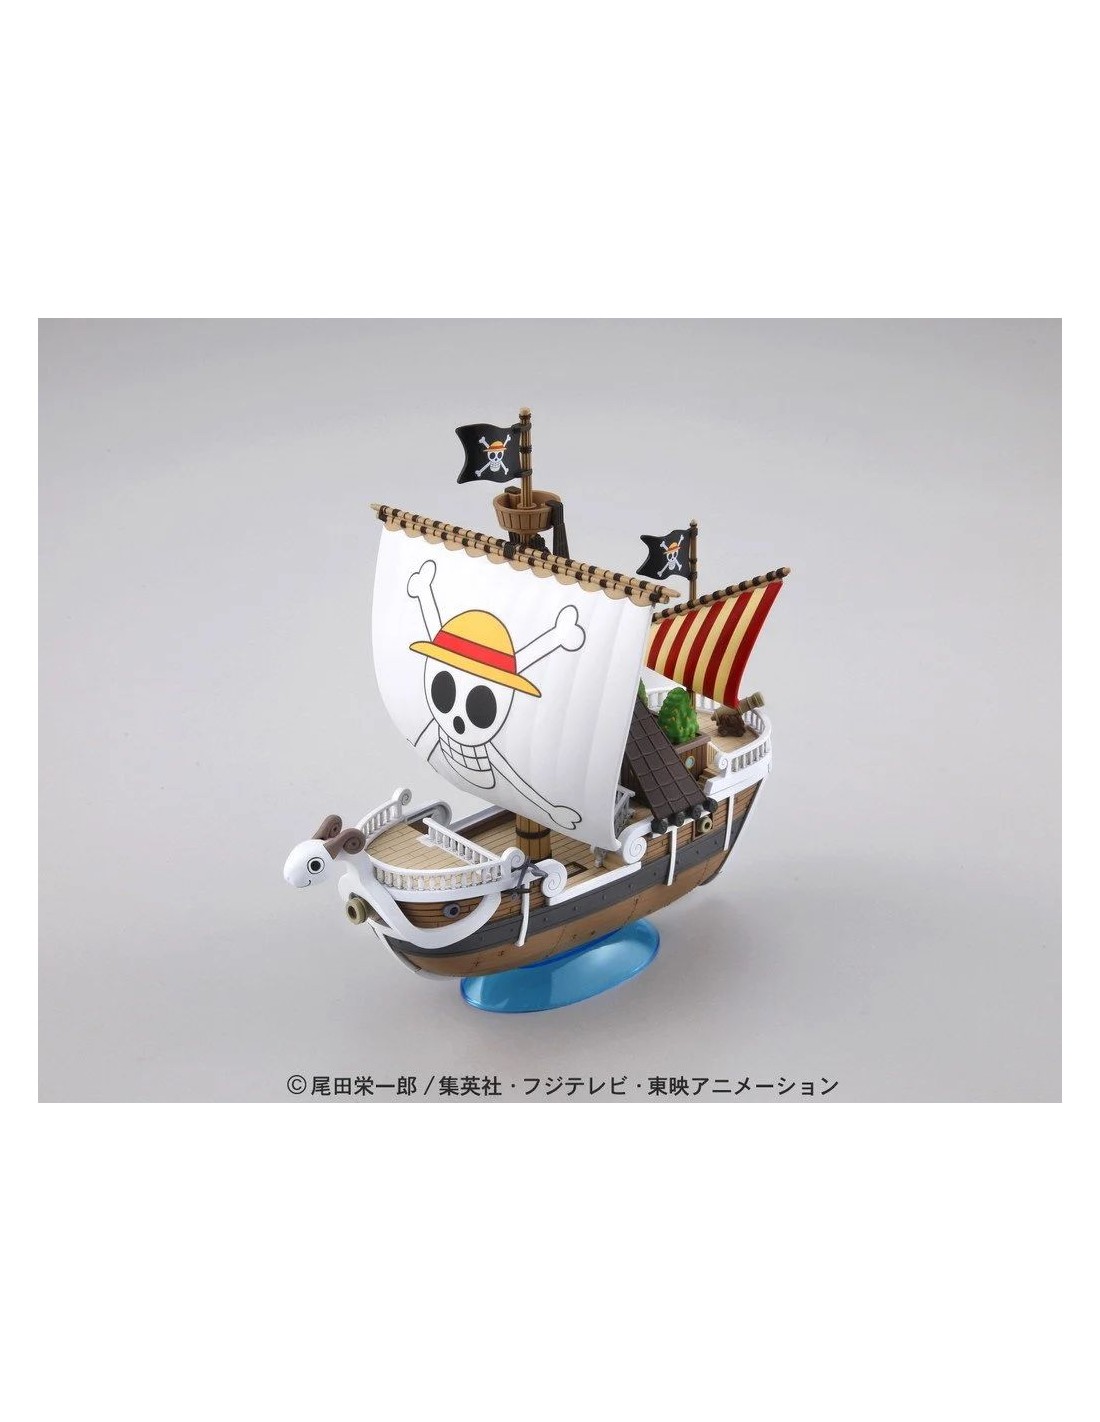 Poster XXL bateau pirate vogue merry - Tableau géant sans cadre 5 pièces  One Piece